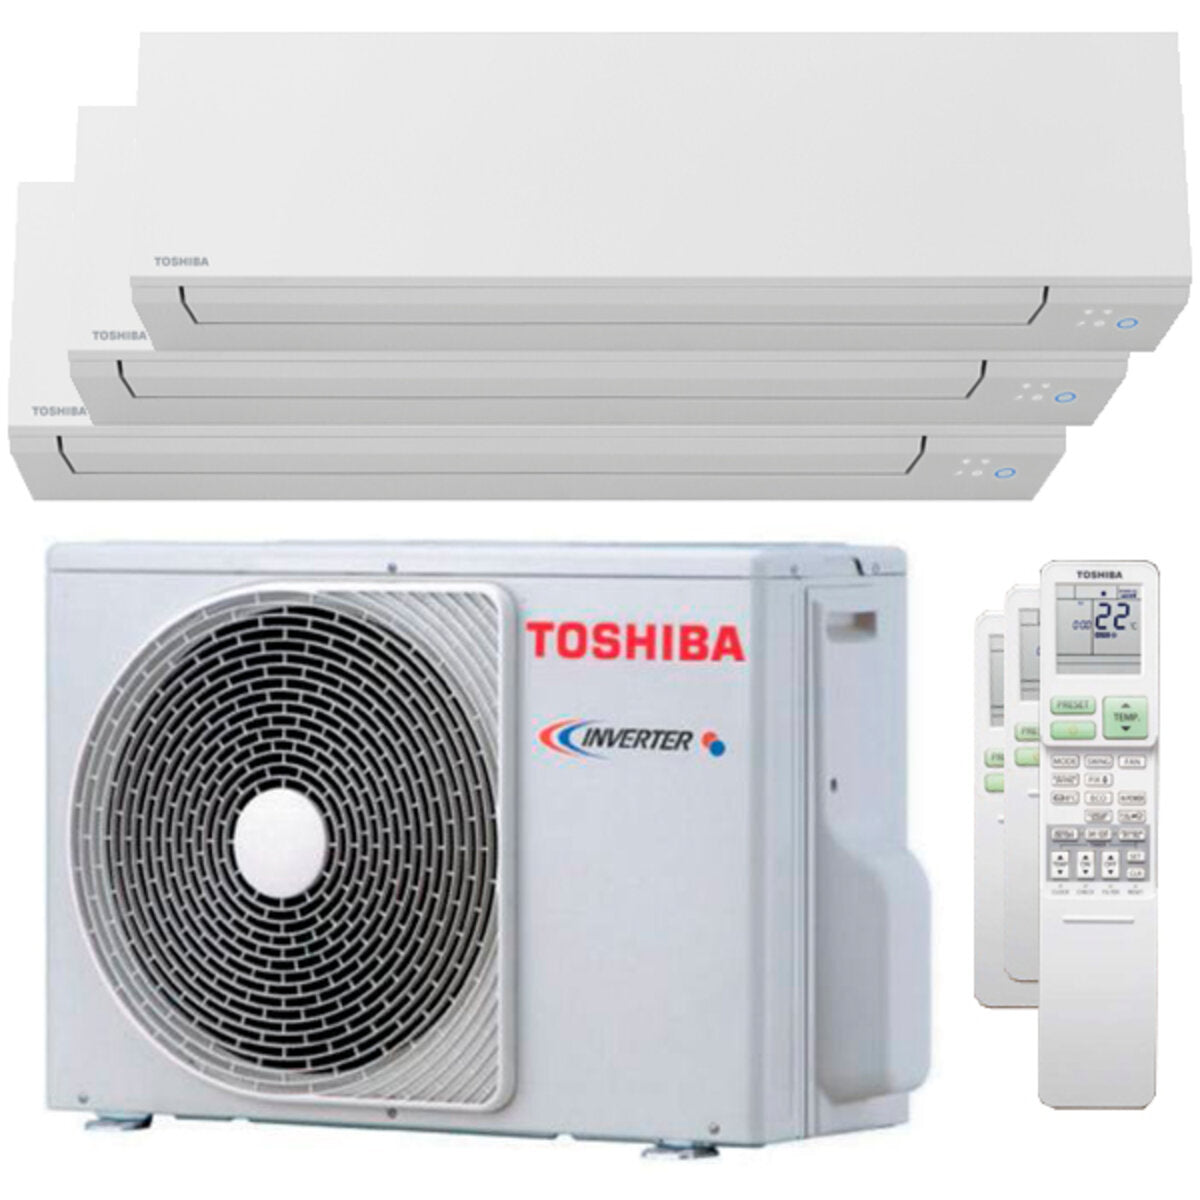 Climatiseur trial split Toshiba SHORAI Edge 7000 + 7000 + 7000 BTU onduleur A ++ unité extérieure wifi 5,2 kW